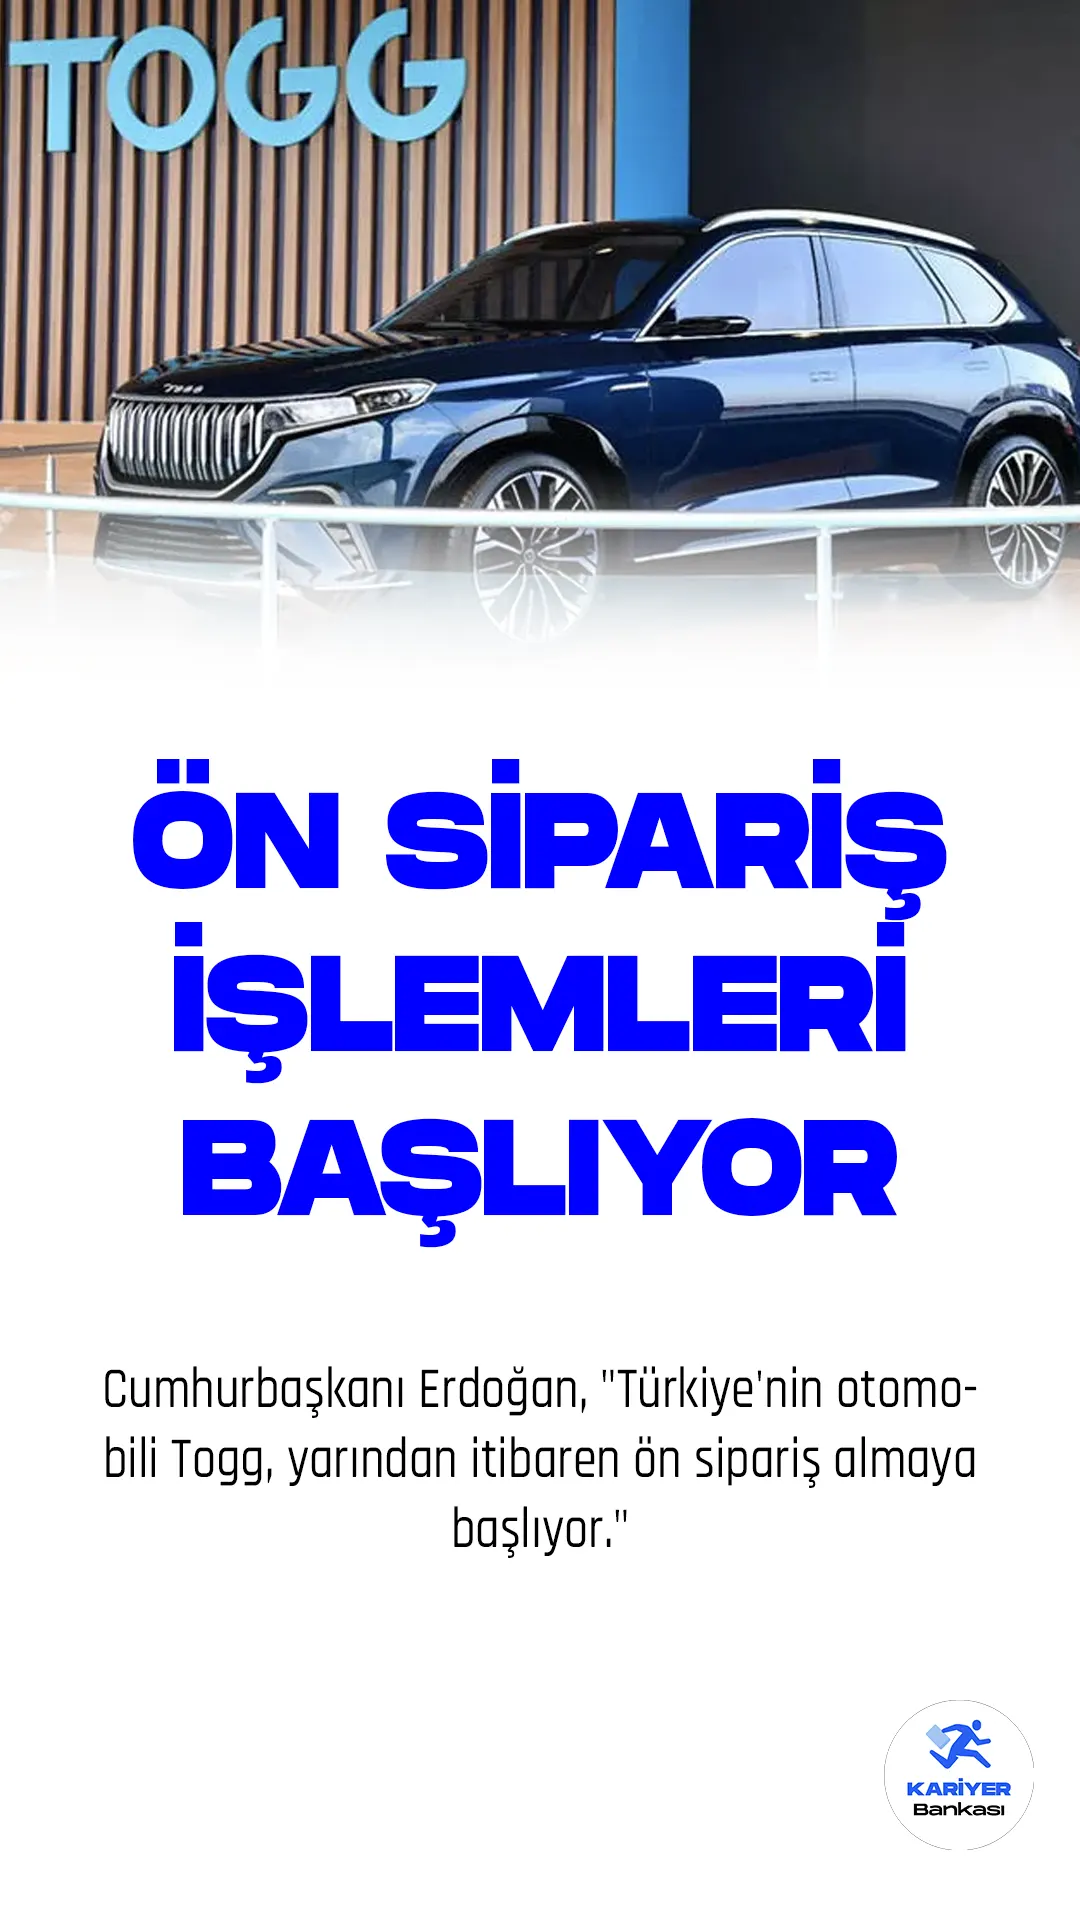 Son Dakika... TOGG ön sipariş işlemleri başlıyor. Cumhurbaşkanı Erdoğan, "Türkiye'nin otomobili Togg, yarından itibaren ön sipariş almaya başlıyor." diye konuştu.